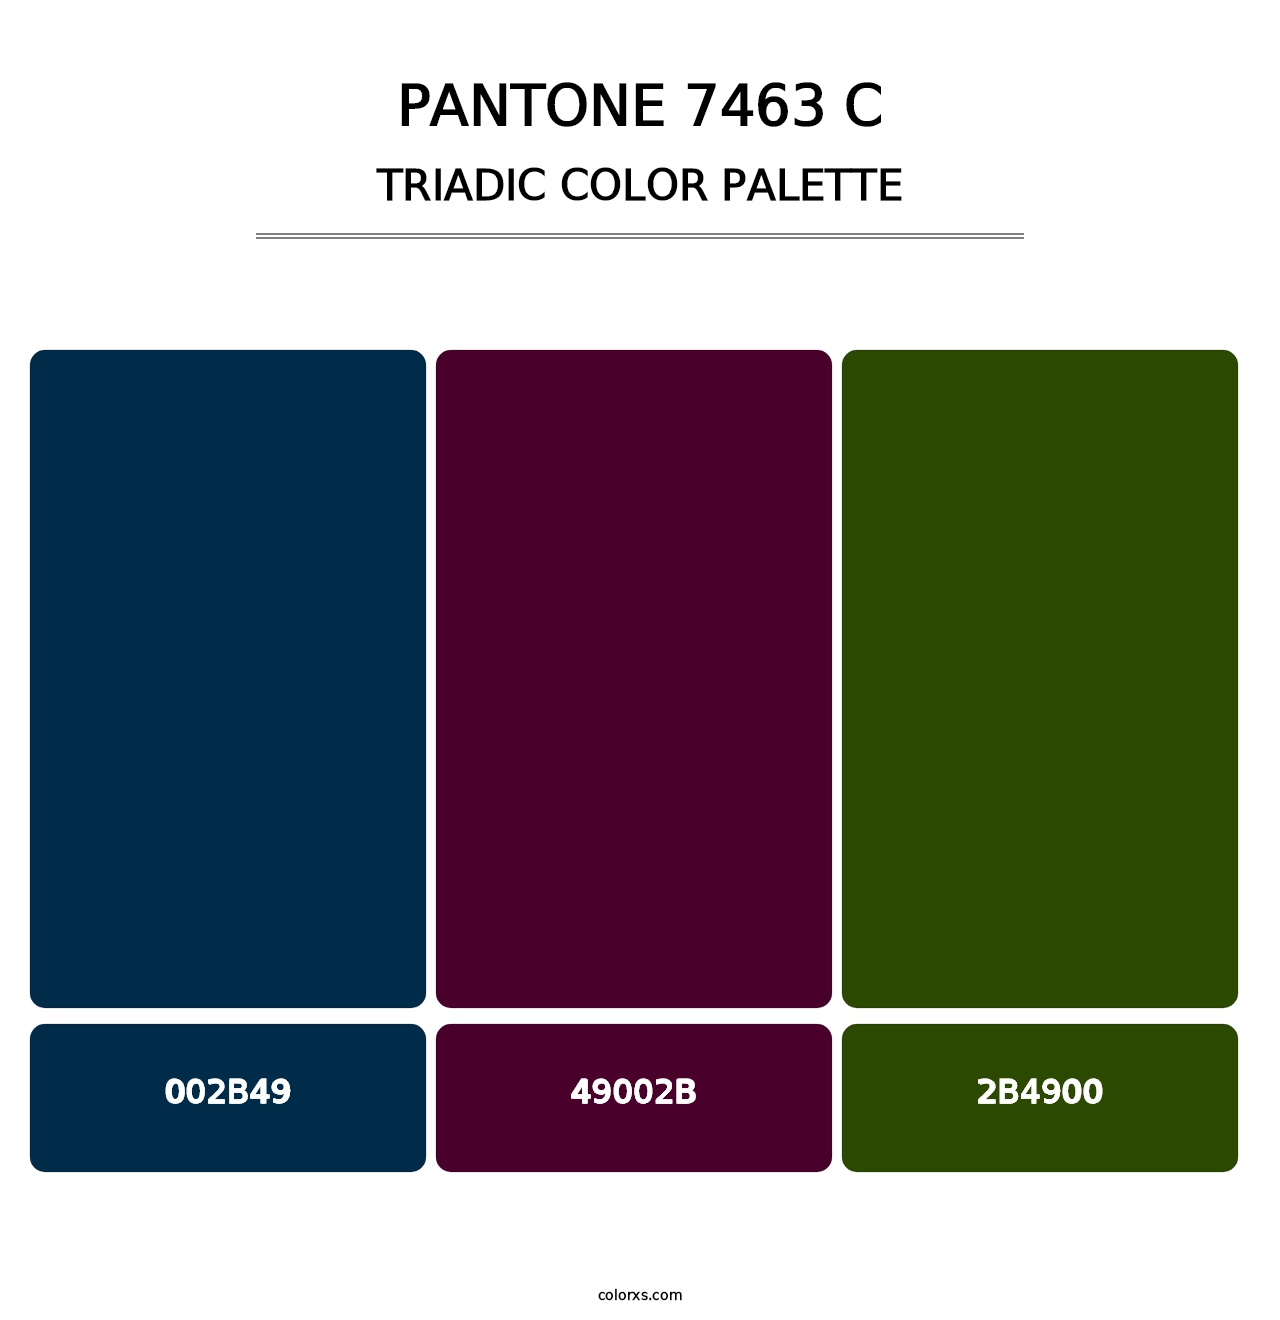 PANTONE 7463 C - Triadic Color Palette